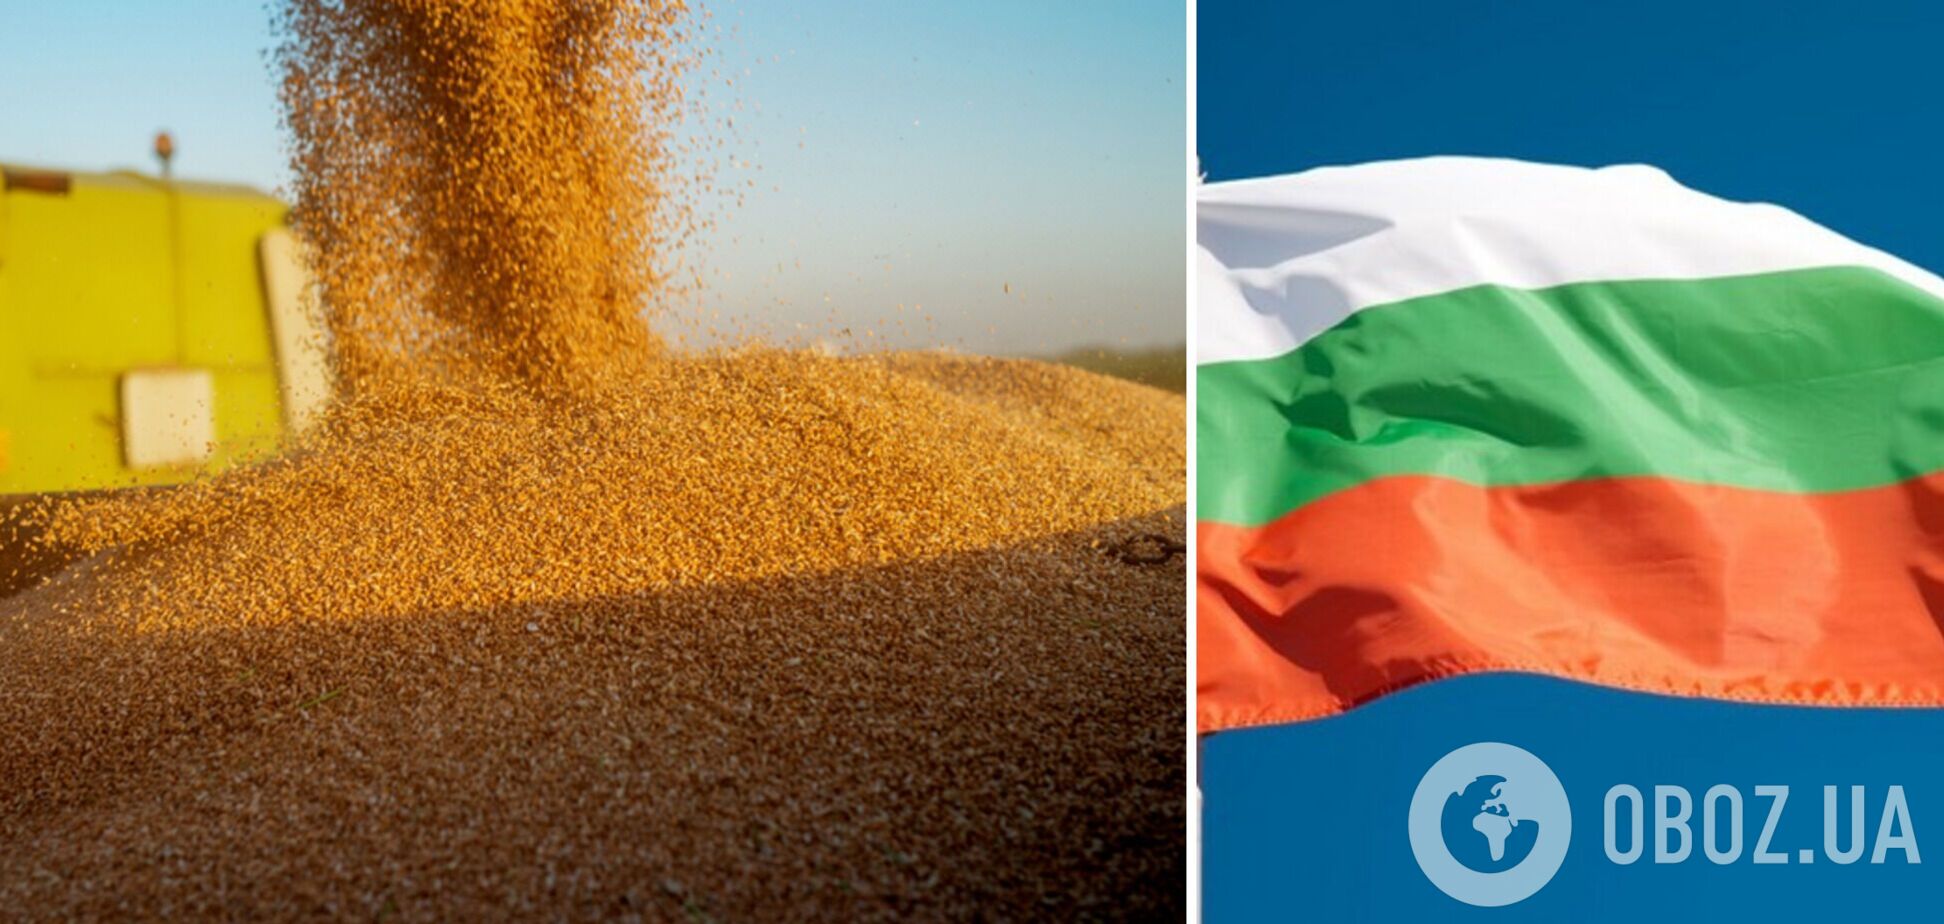 Аграрии Болгарии будут блокировать поступление украинского зерна